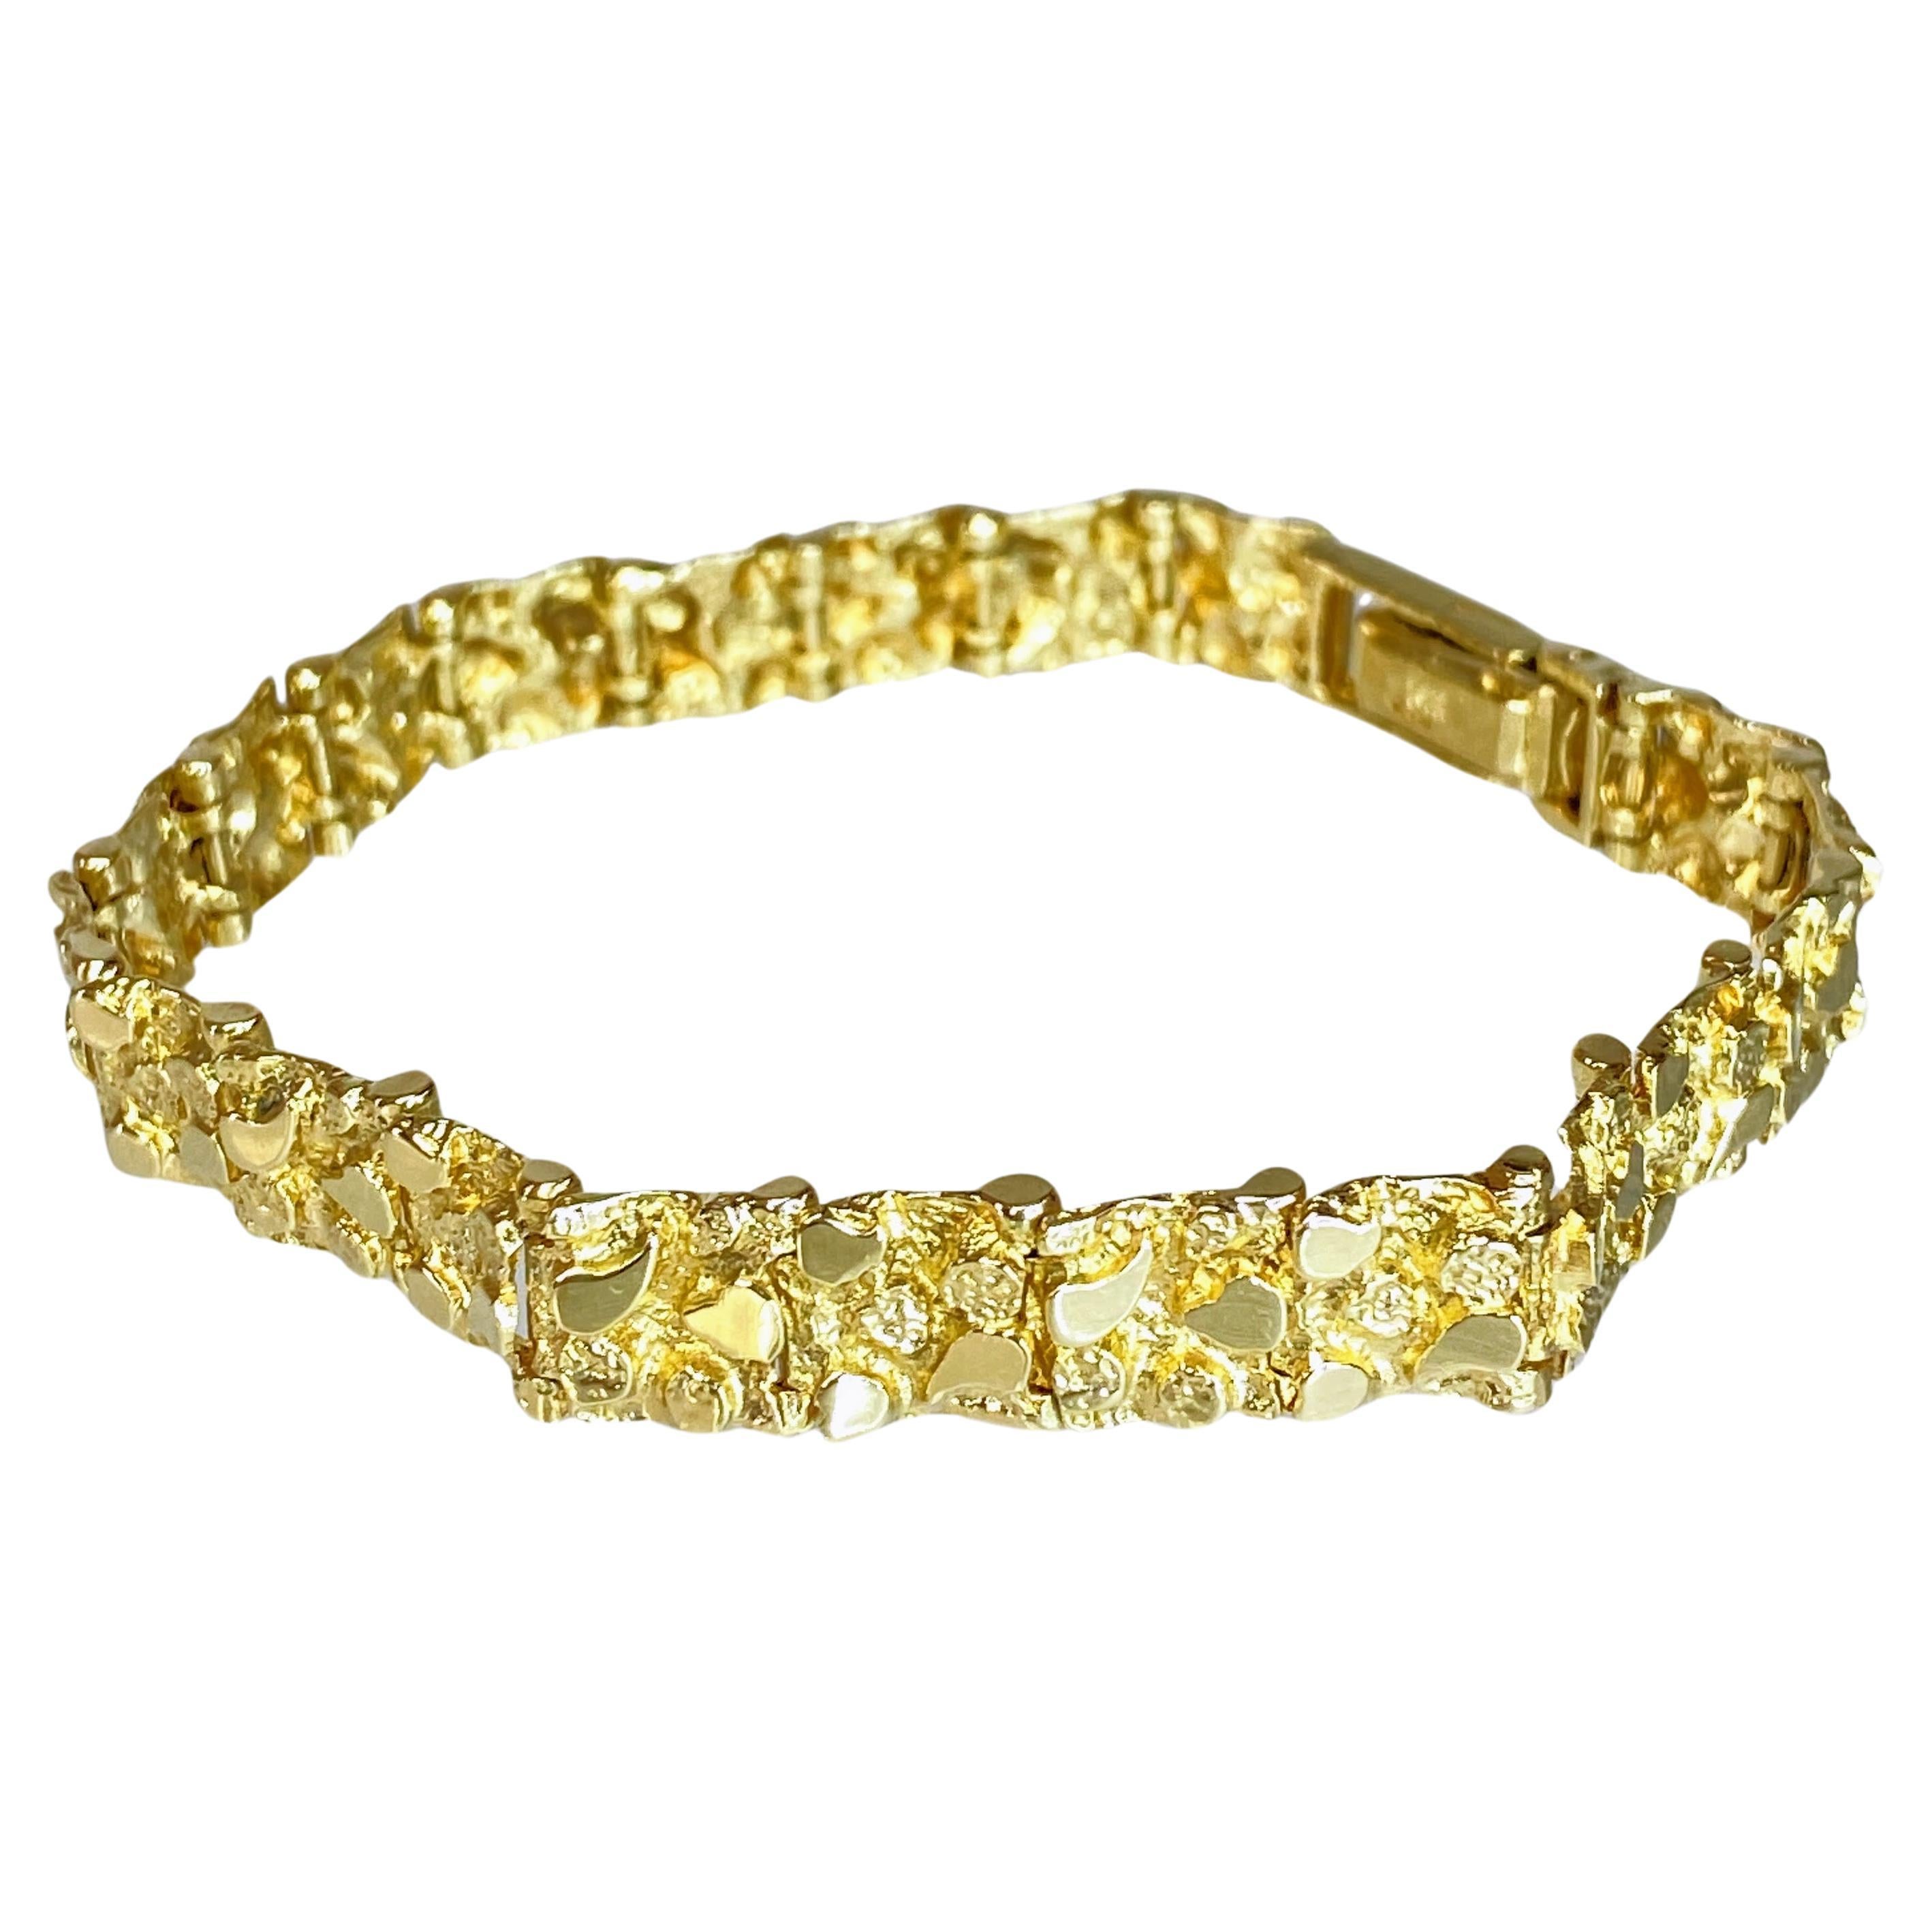 Real 14k Gold Nugget Bracelet Mens 10 Inch Long 30mm Thick Genuine 14 KT  Solid | eBay